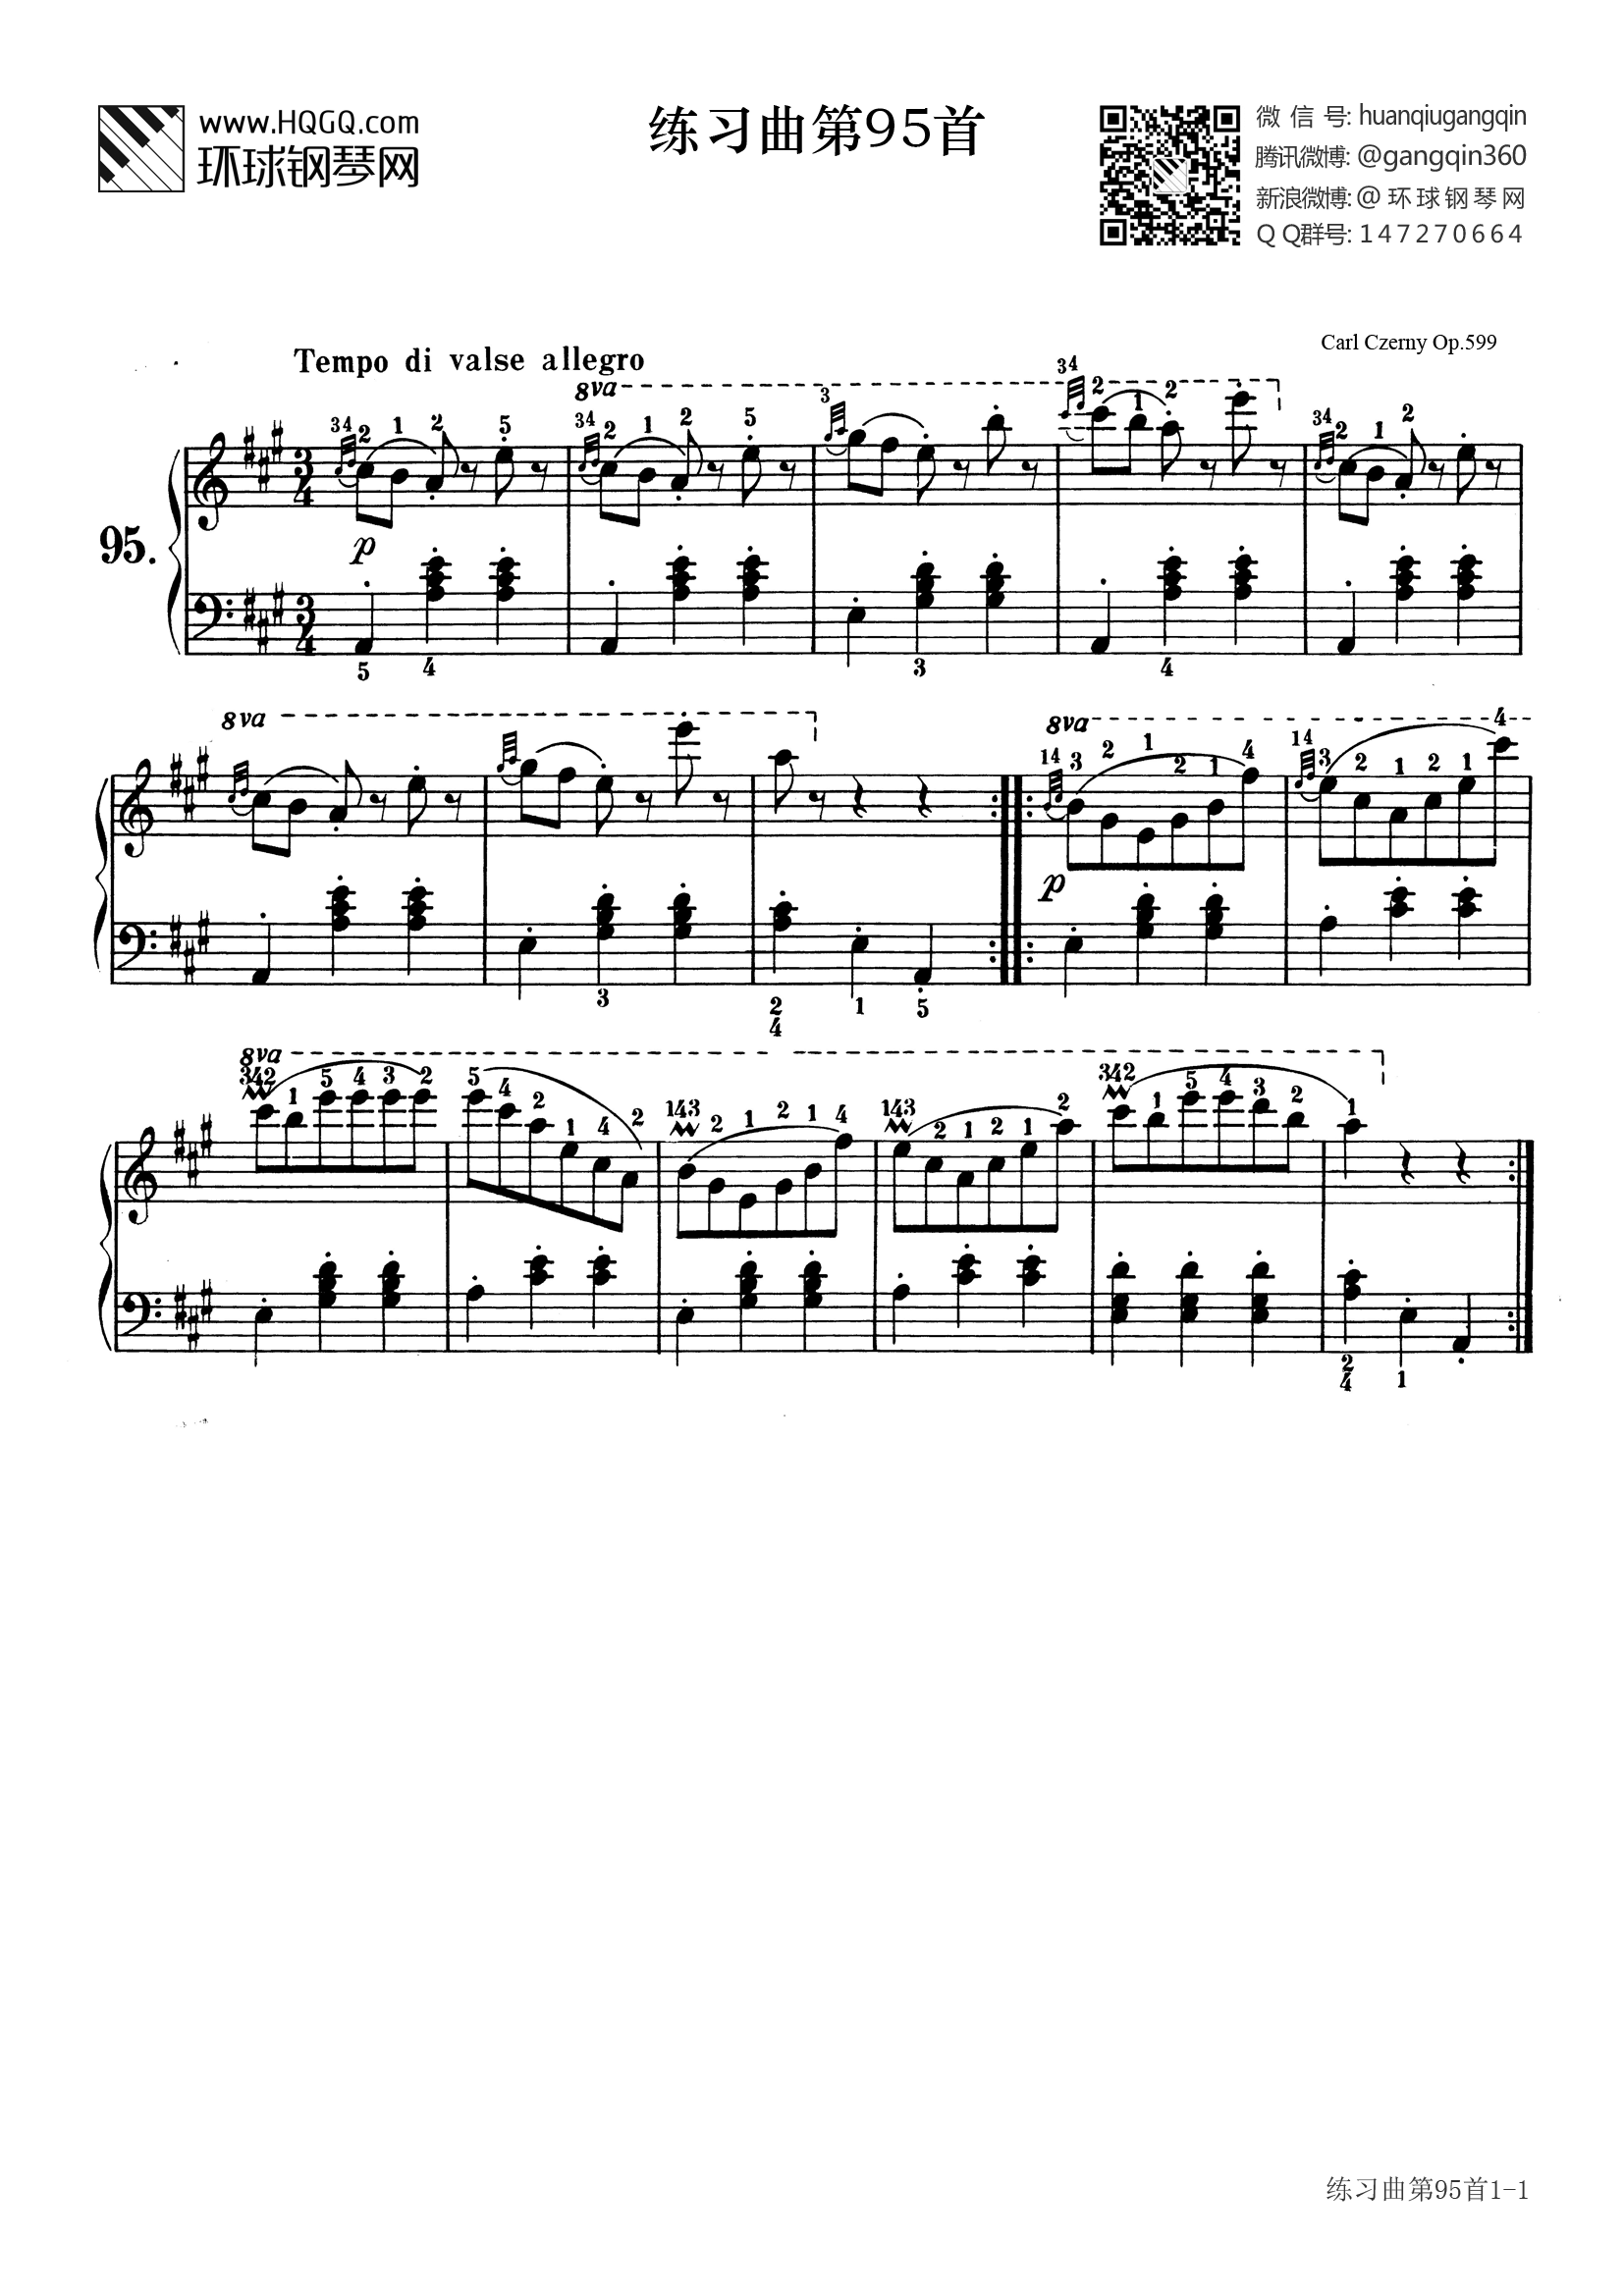 钢琴599第21条曲谱图片